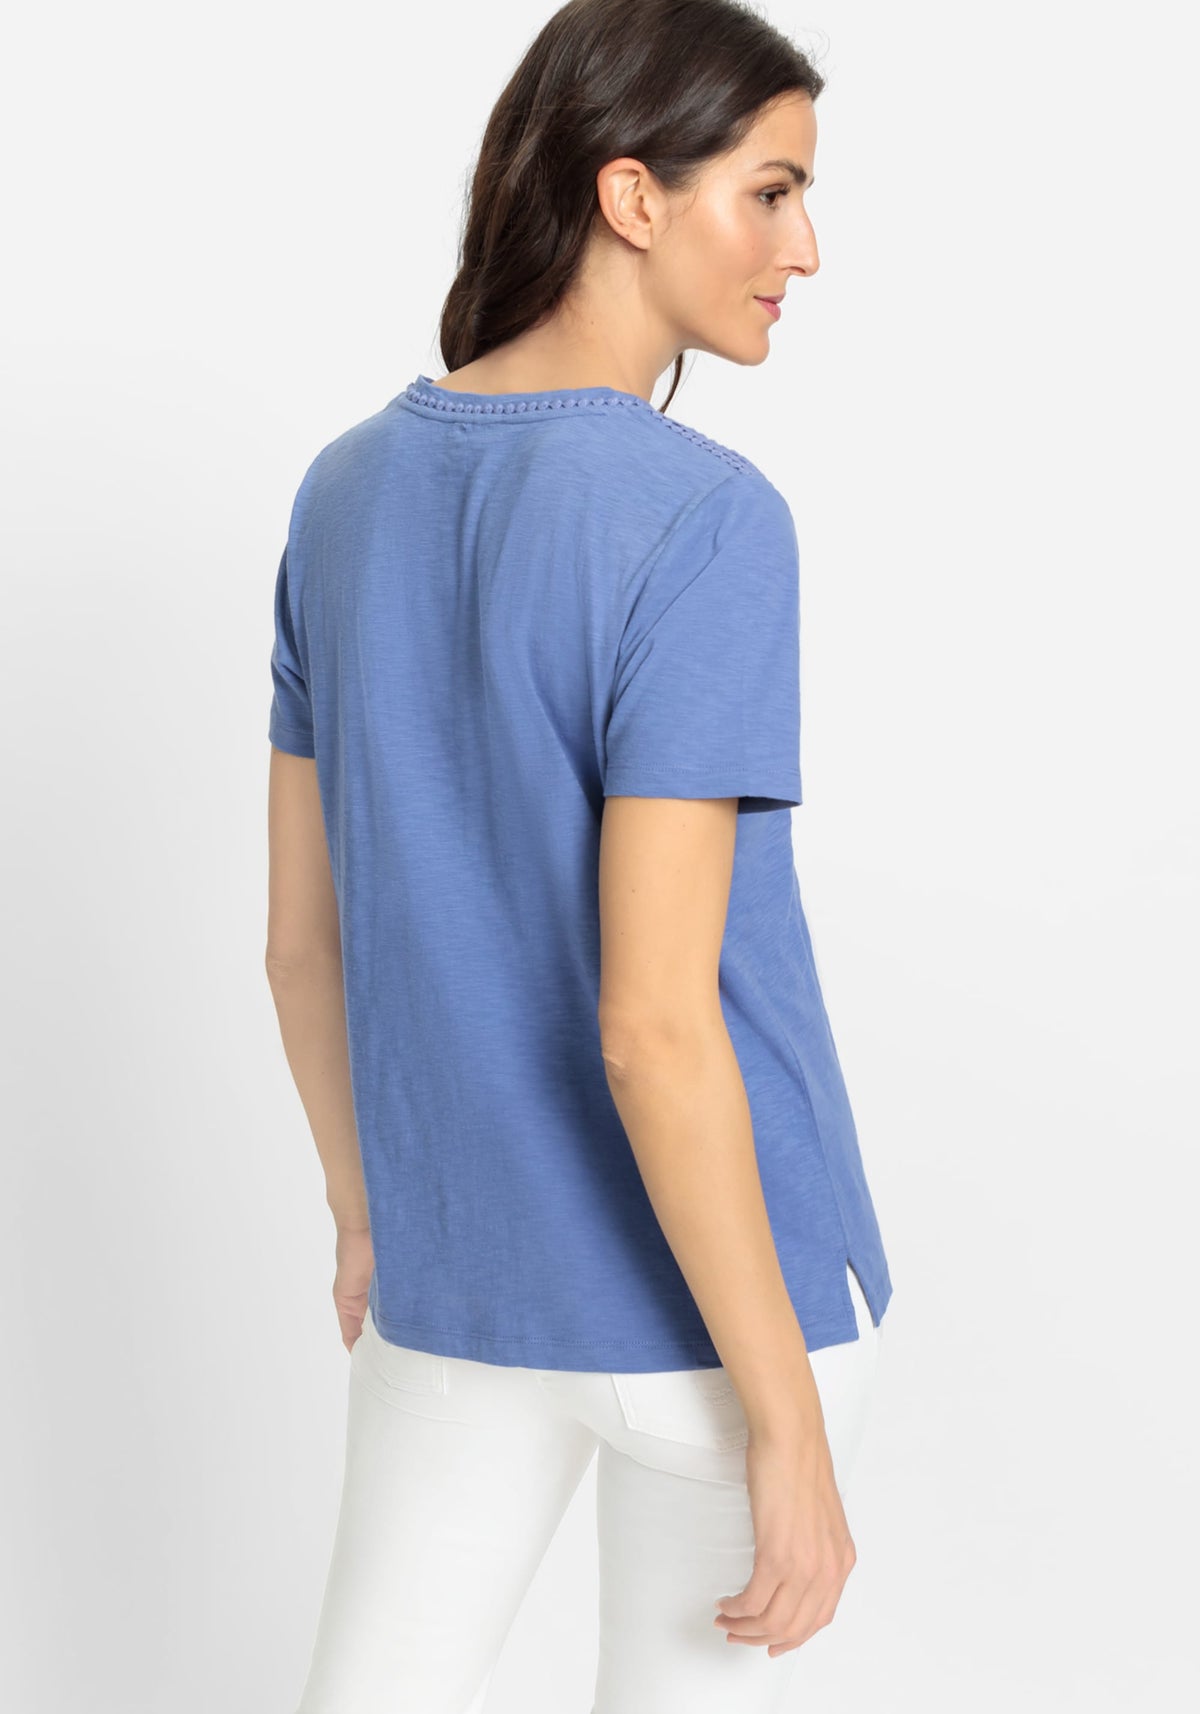 Tee-shirt à manches courtes 100% coton avec bordure brodée